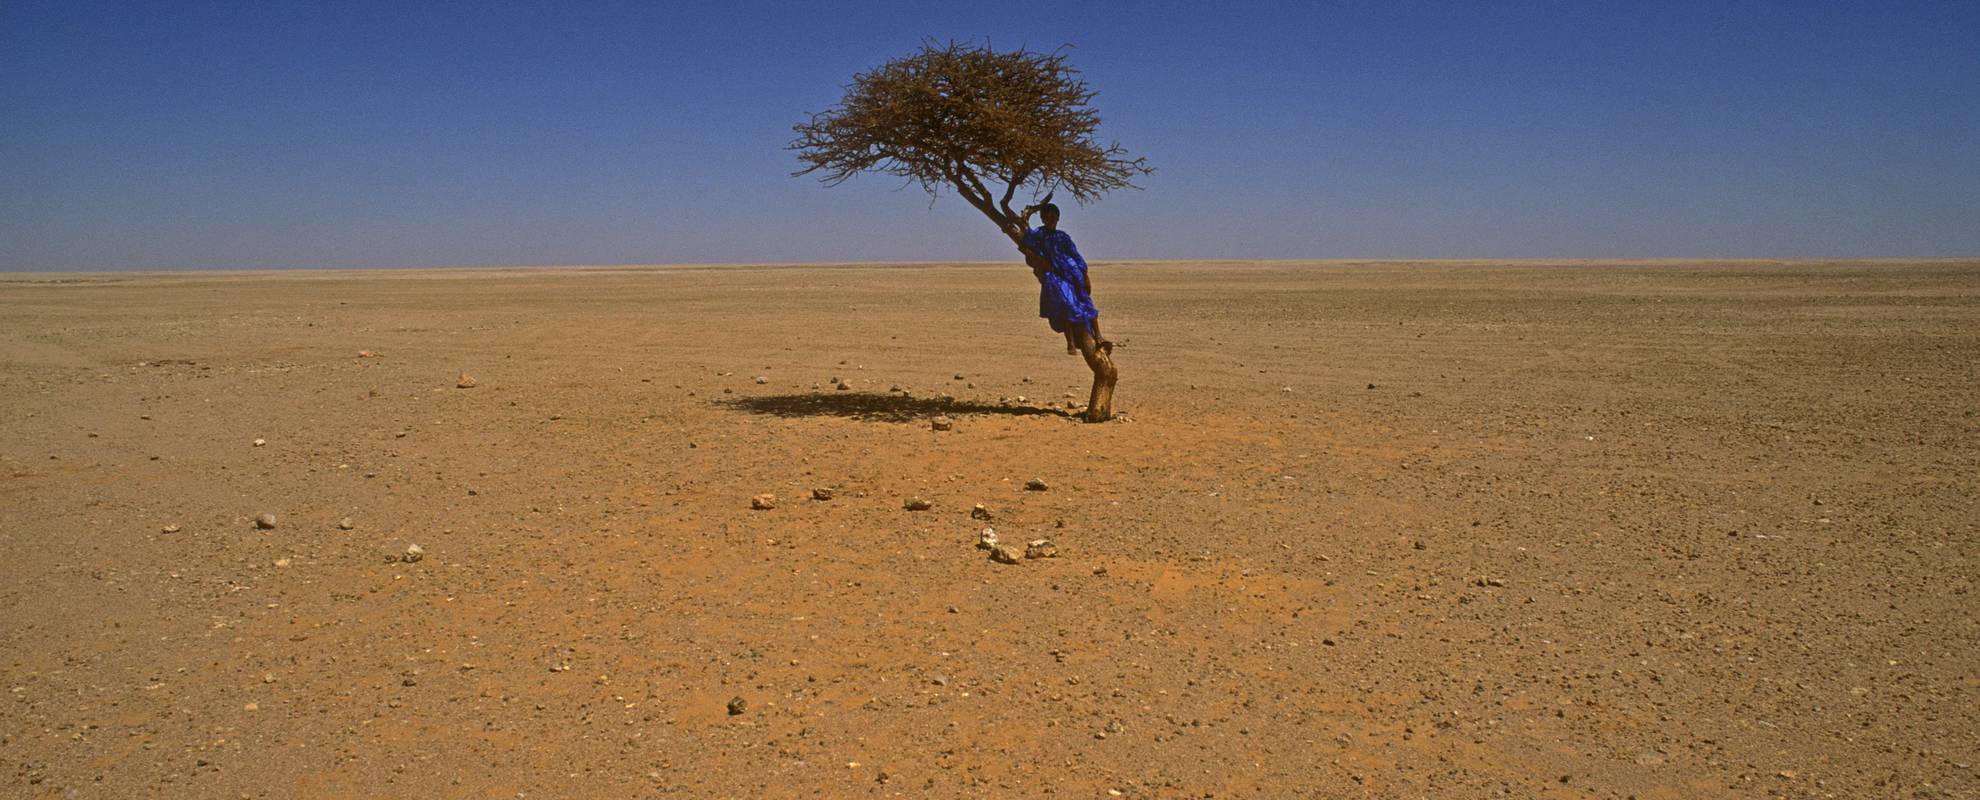 Västsahara. pojke och träd